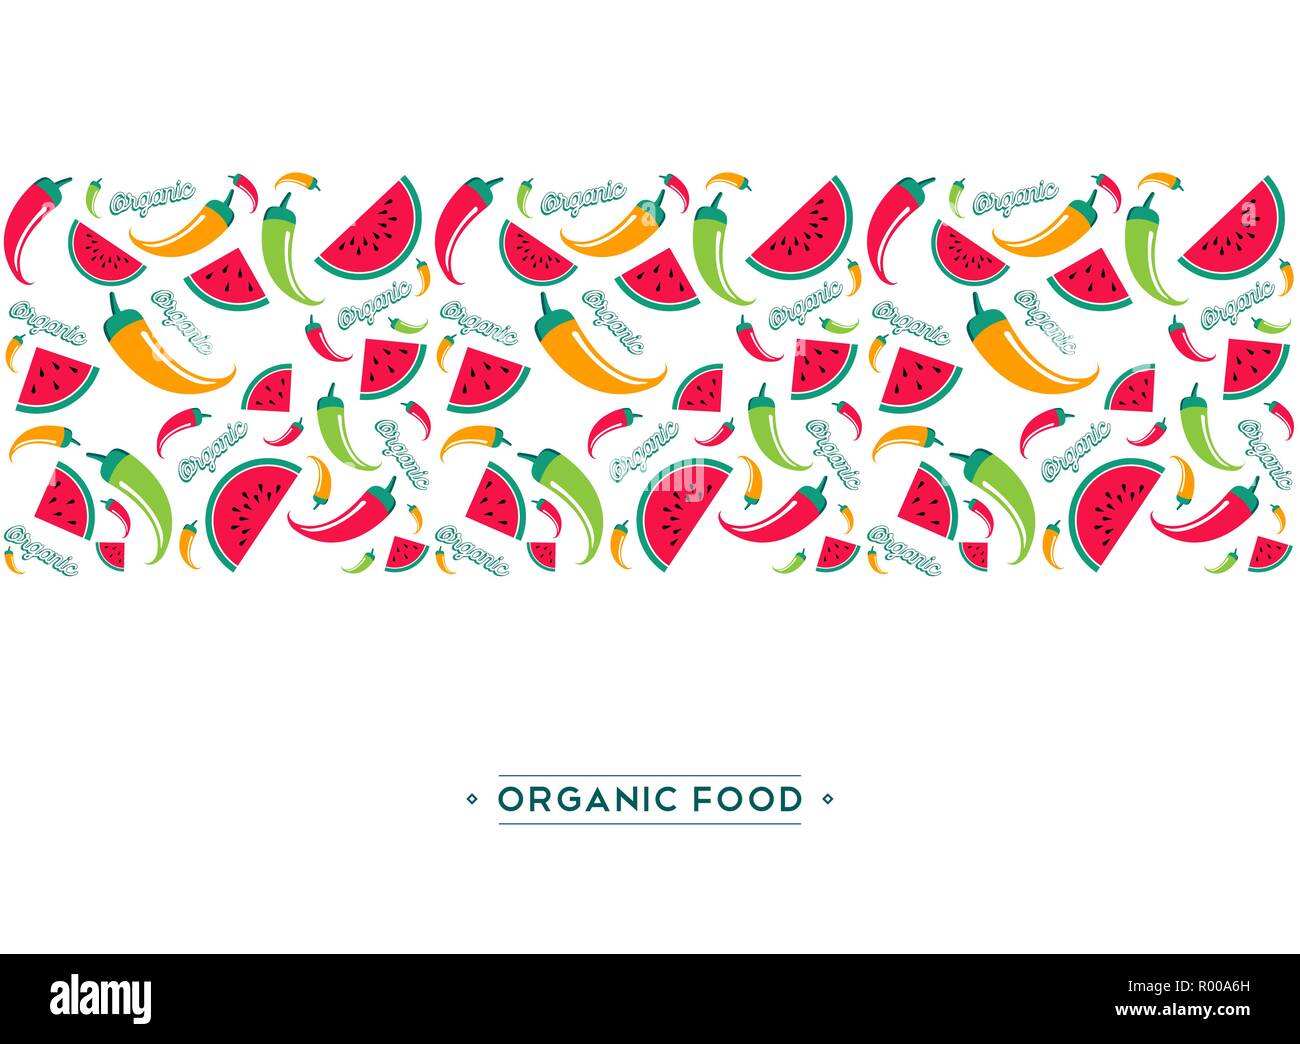 Organic Food Menü Design Illustration für gesunde Ernährung mit bunten Hand gezeichnet doodles Cartoon Muster der Sommer Wassermelone Frucht und Pfeffer vegetarisches Stock Vektor